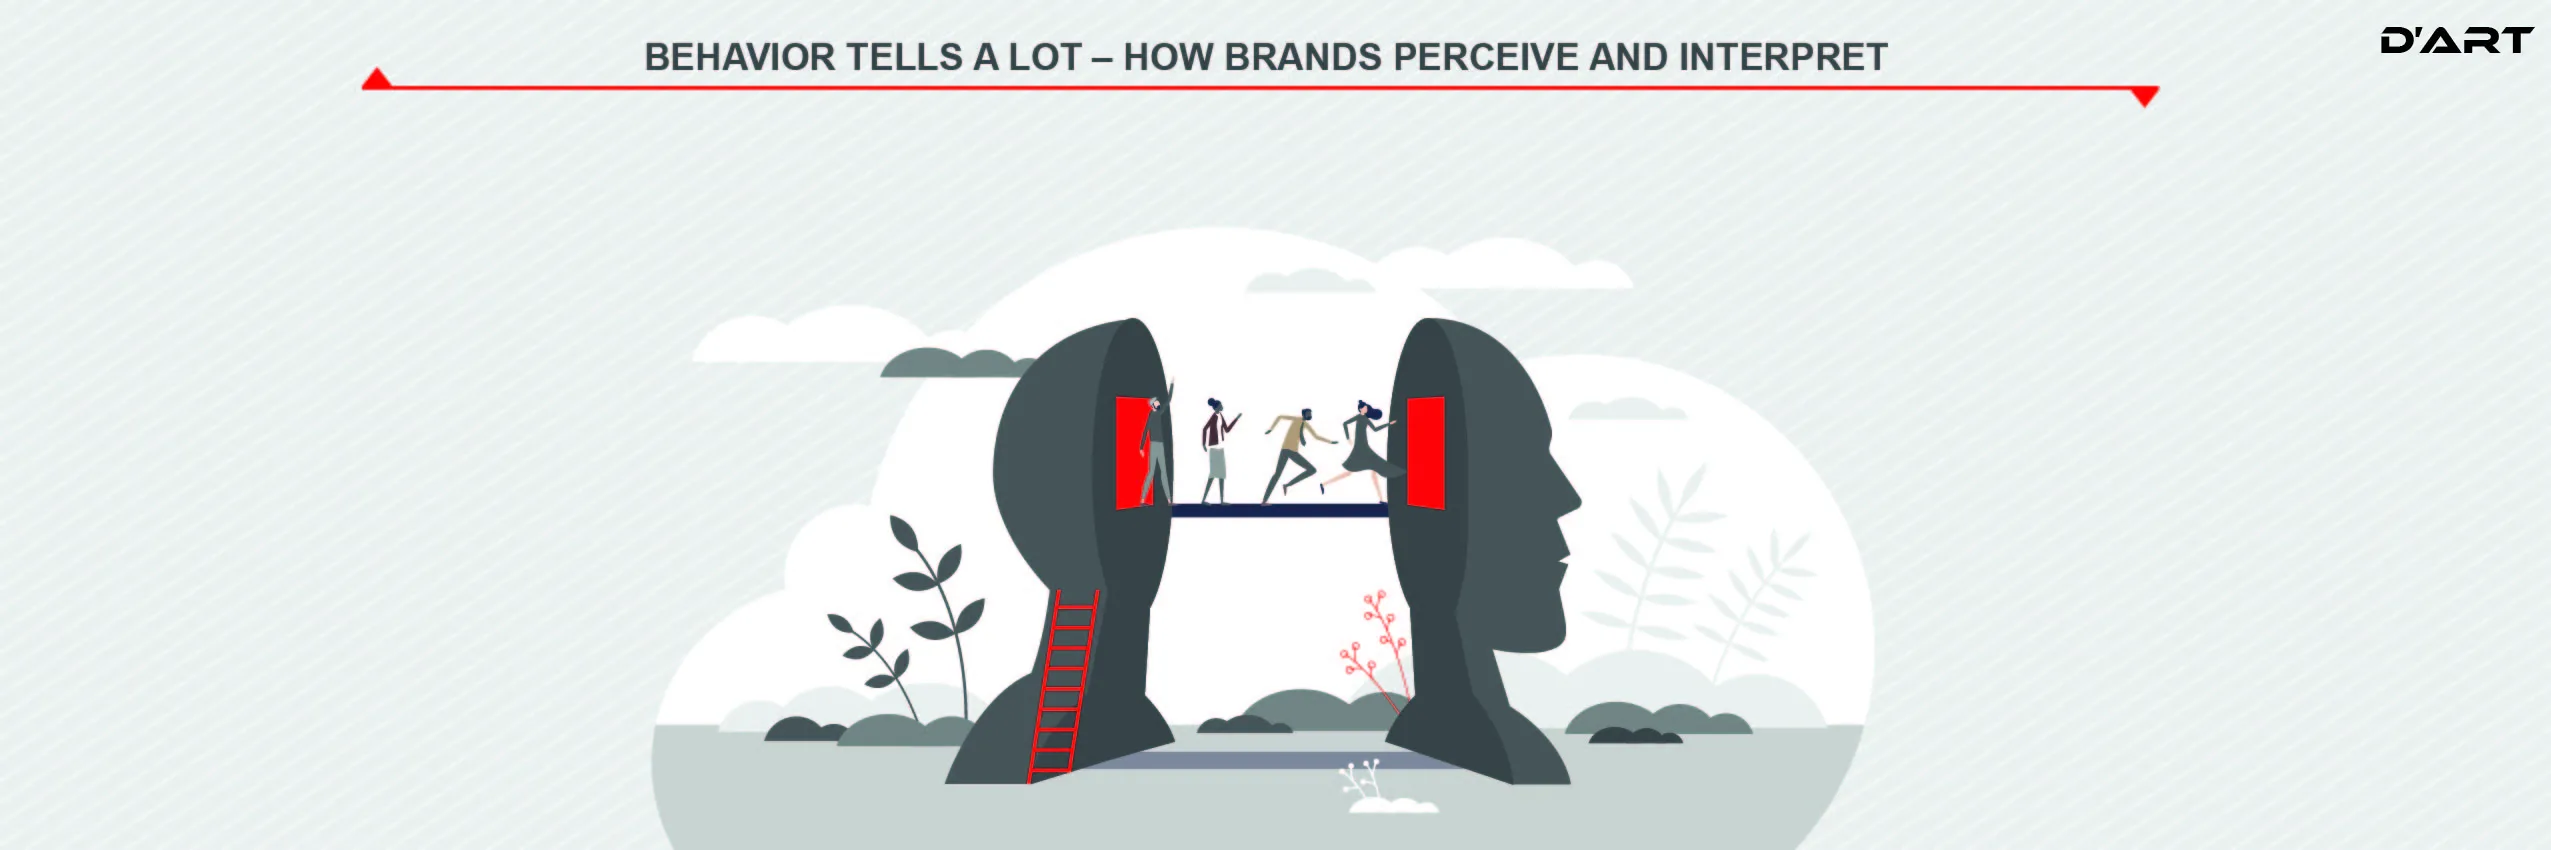 Behavior tells a lot – how brands perceive and interpret